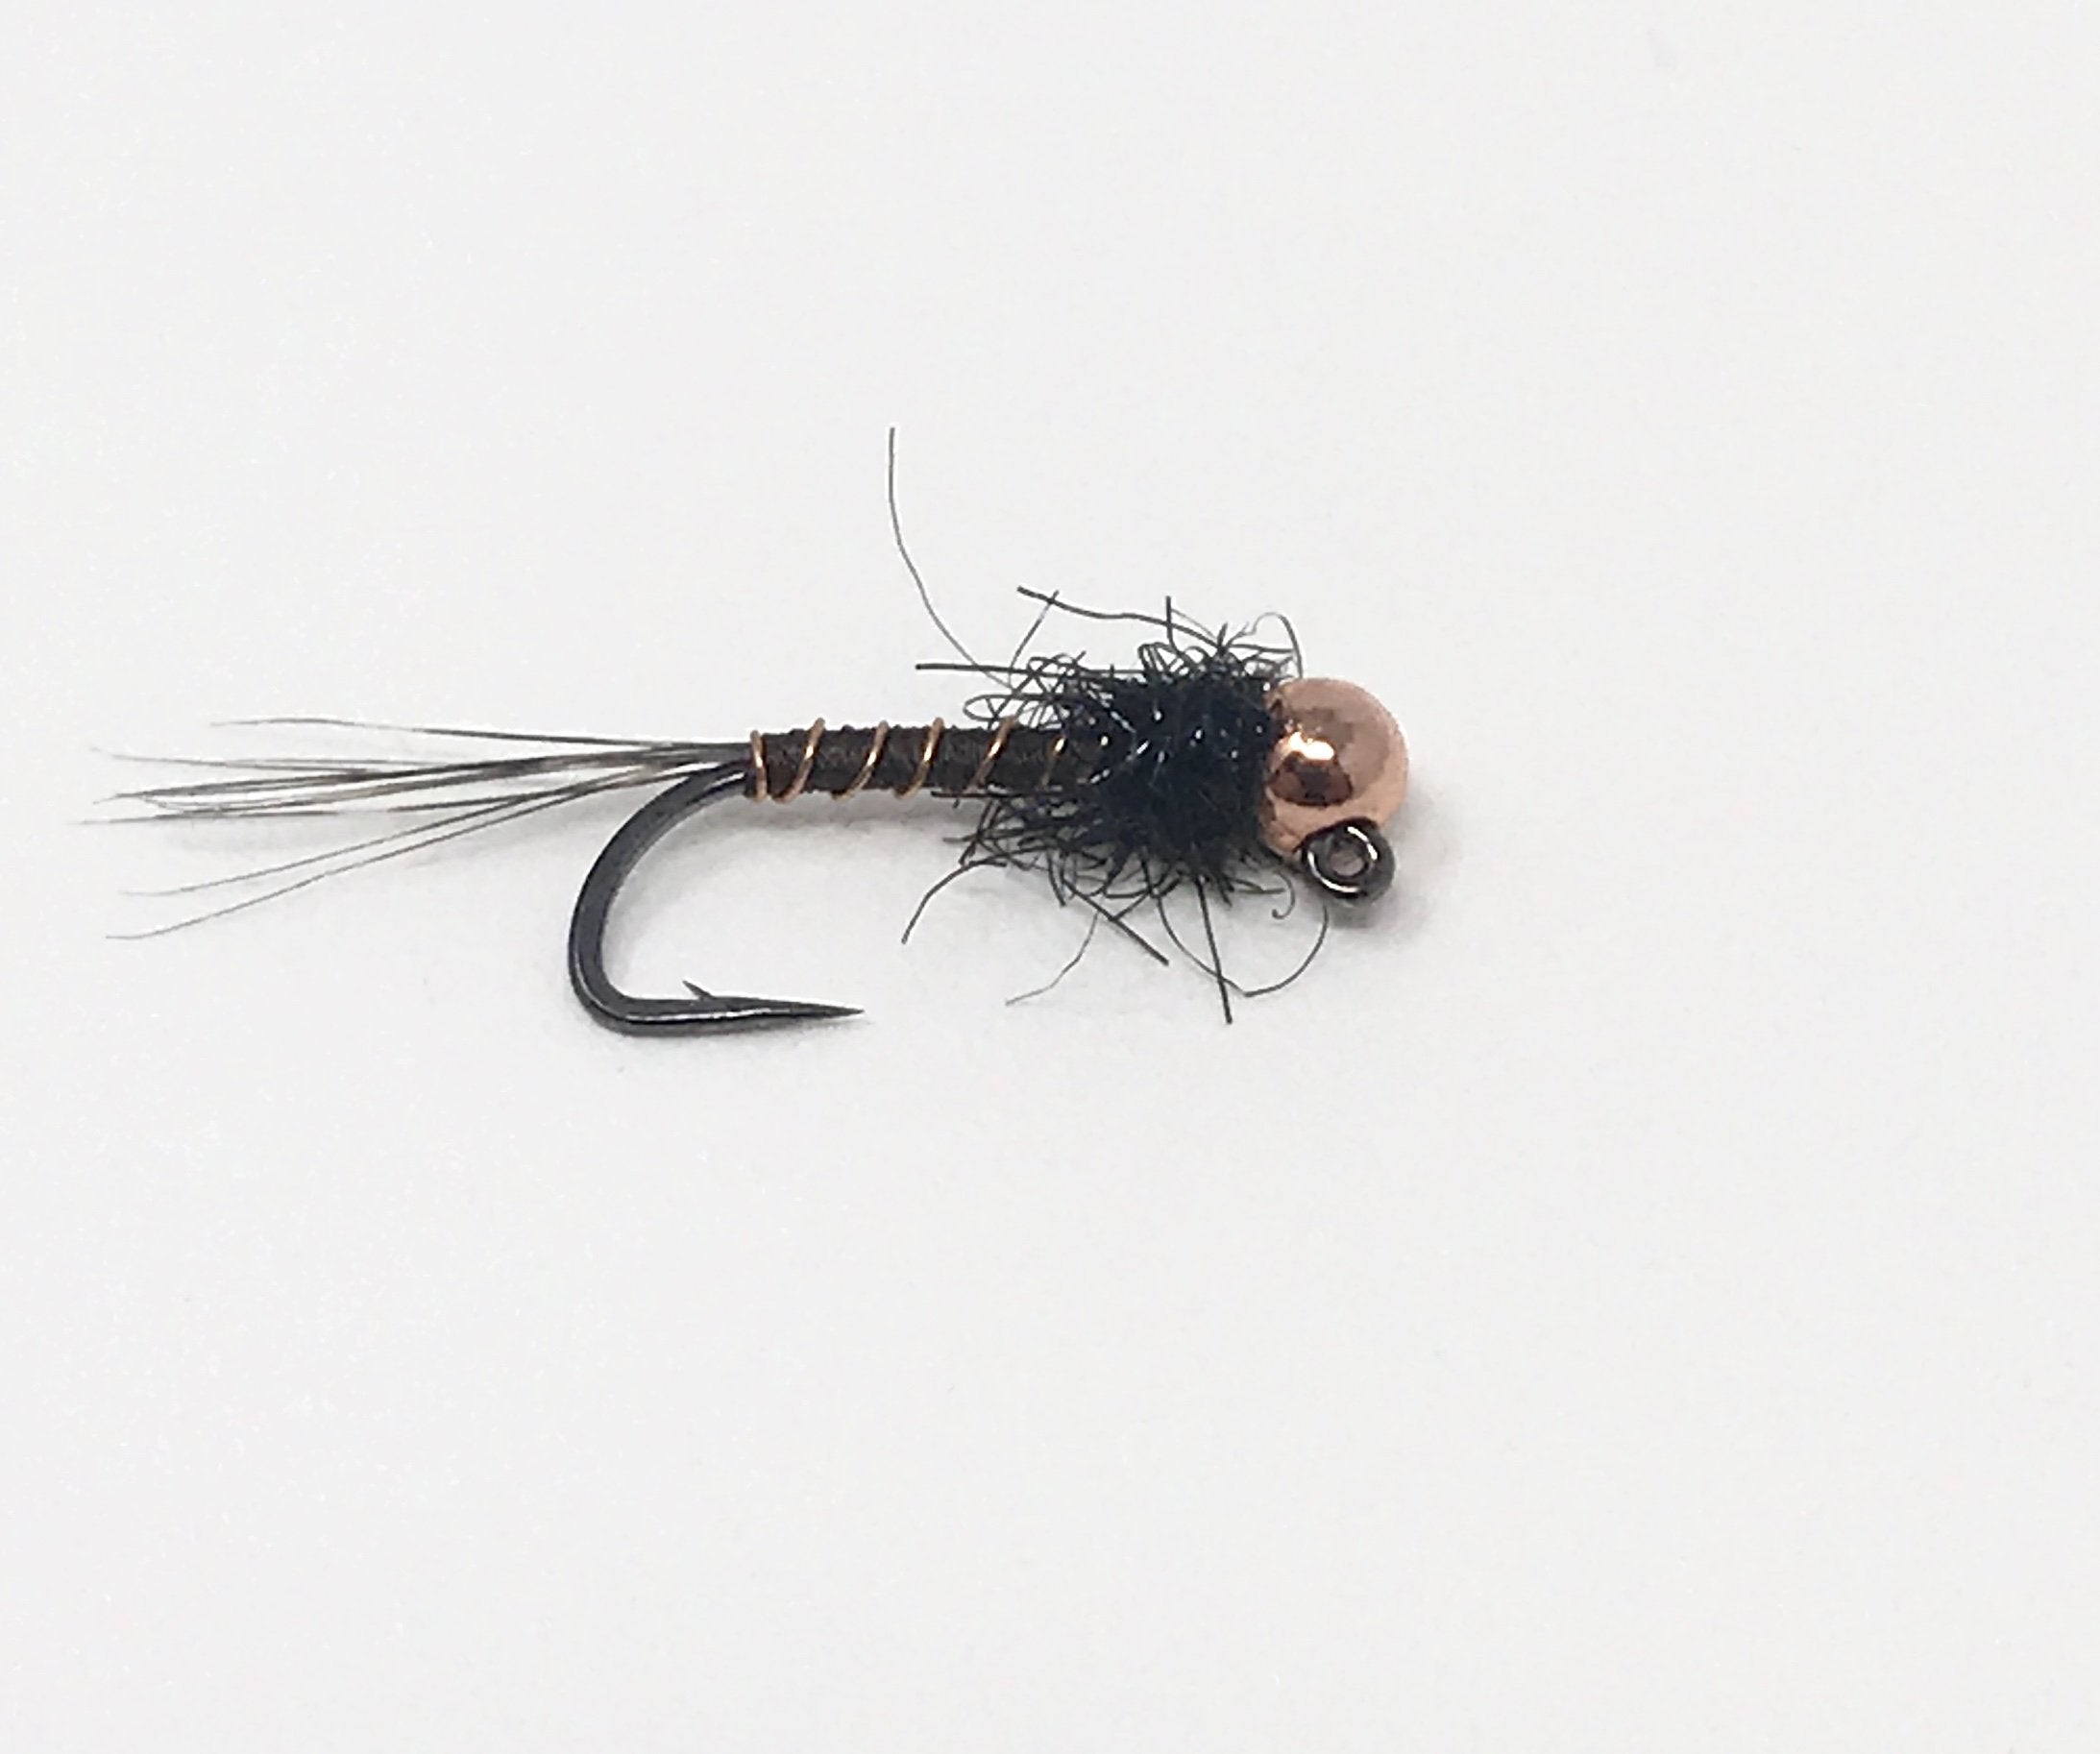 Adams Dry Fly – Dakota Angler & Outfitter